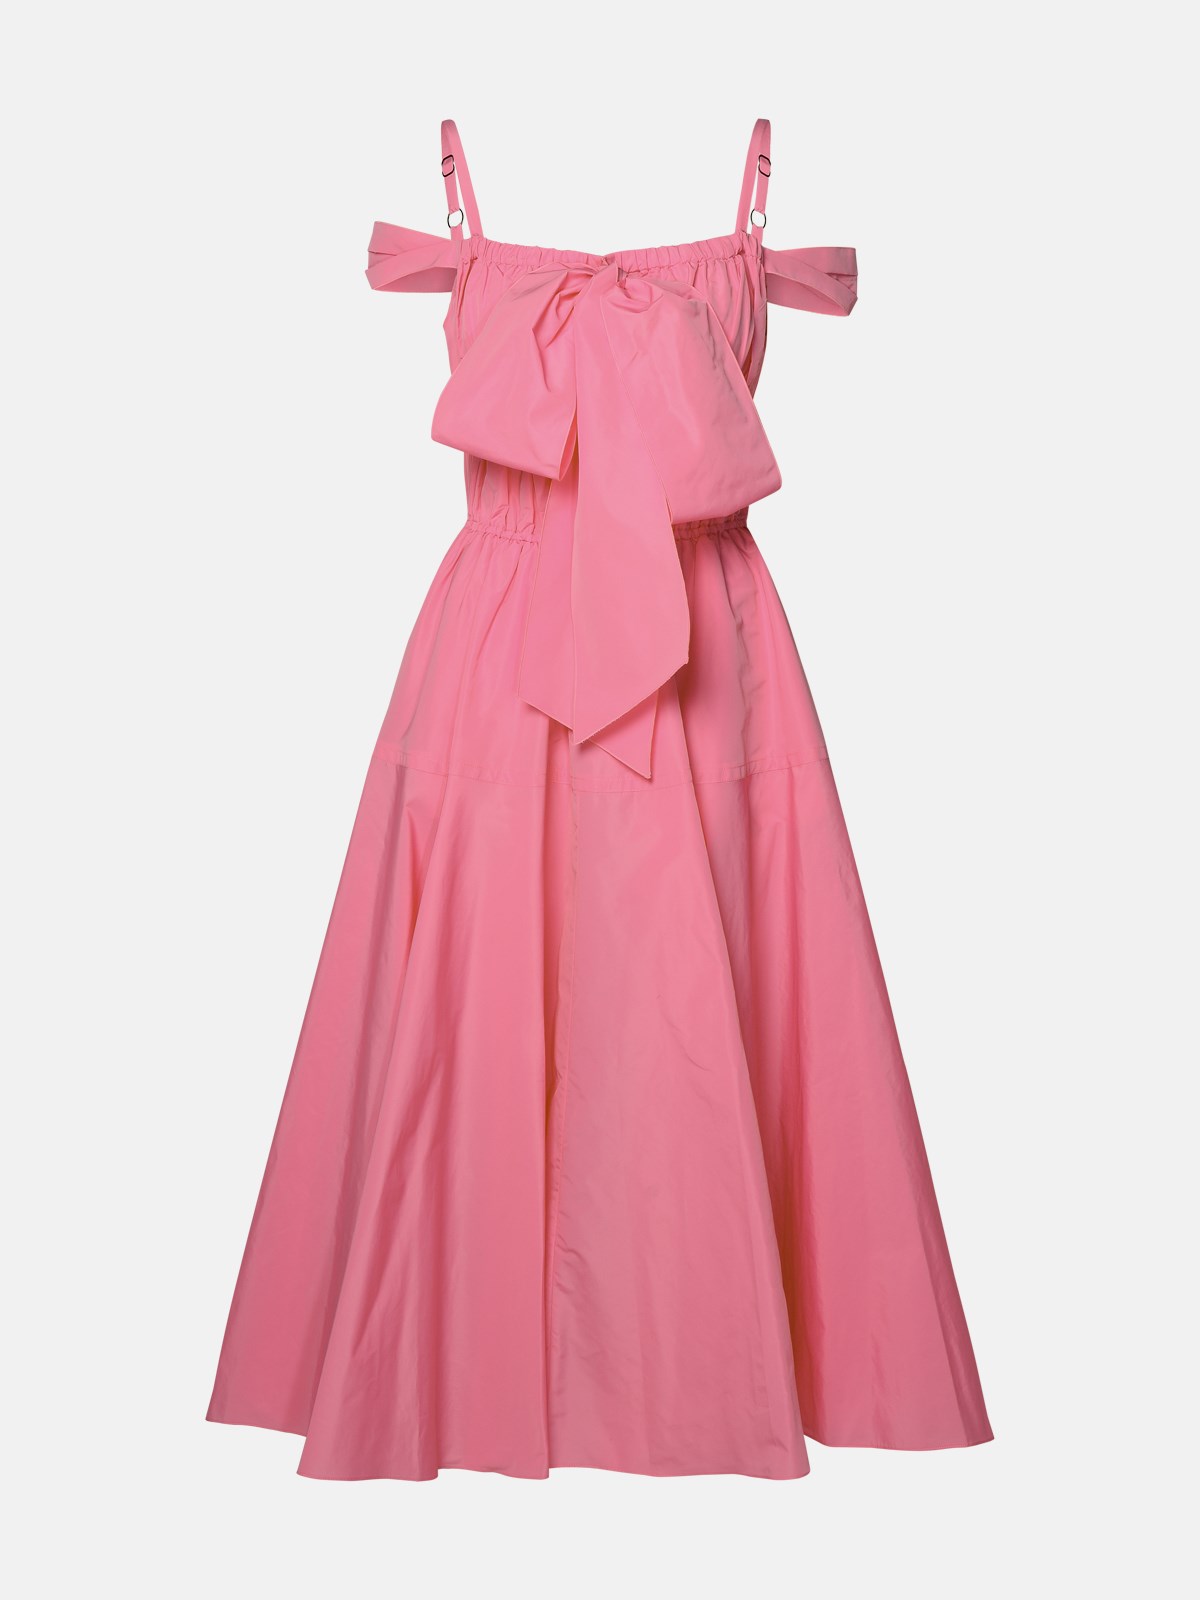 Patou Pink Polyester Dress